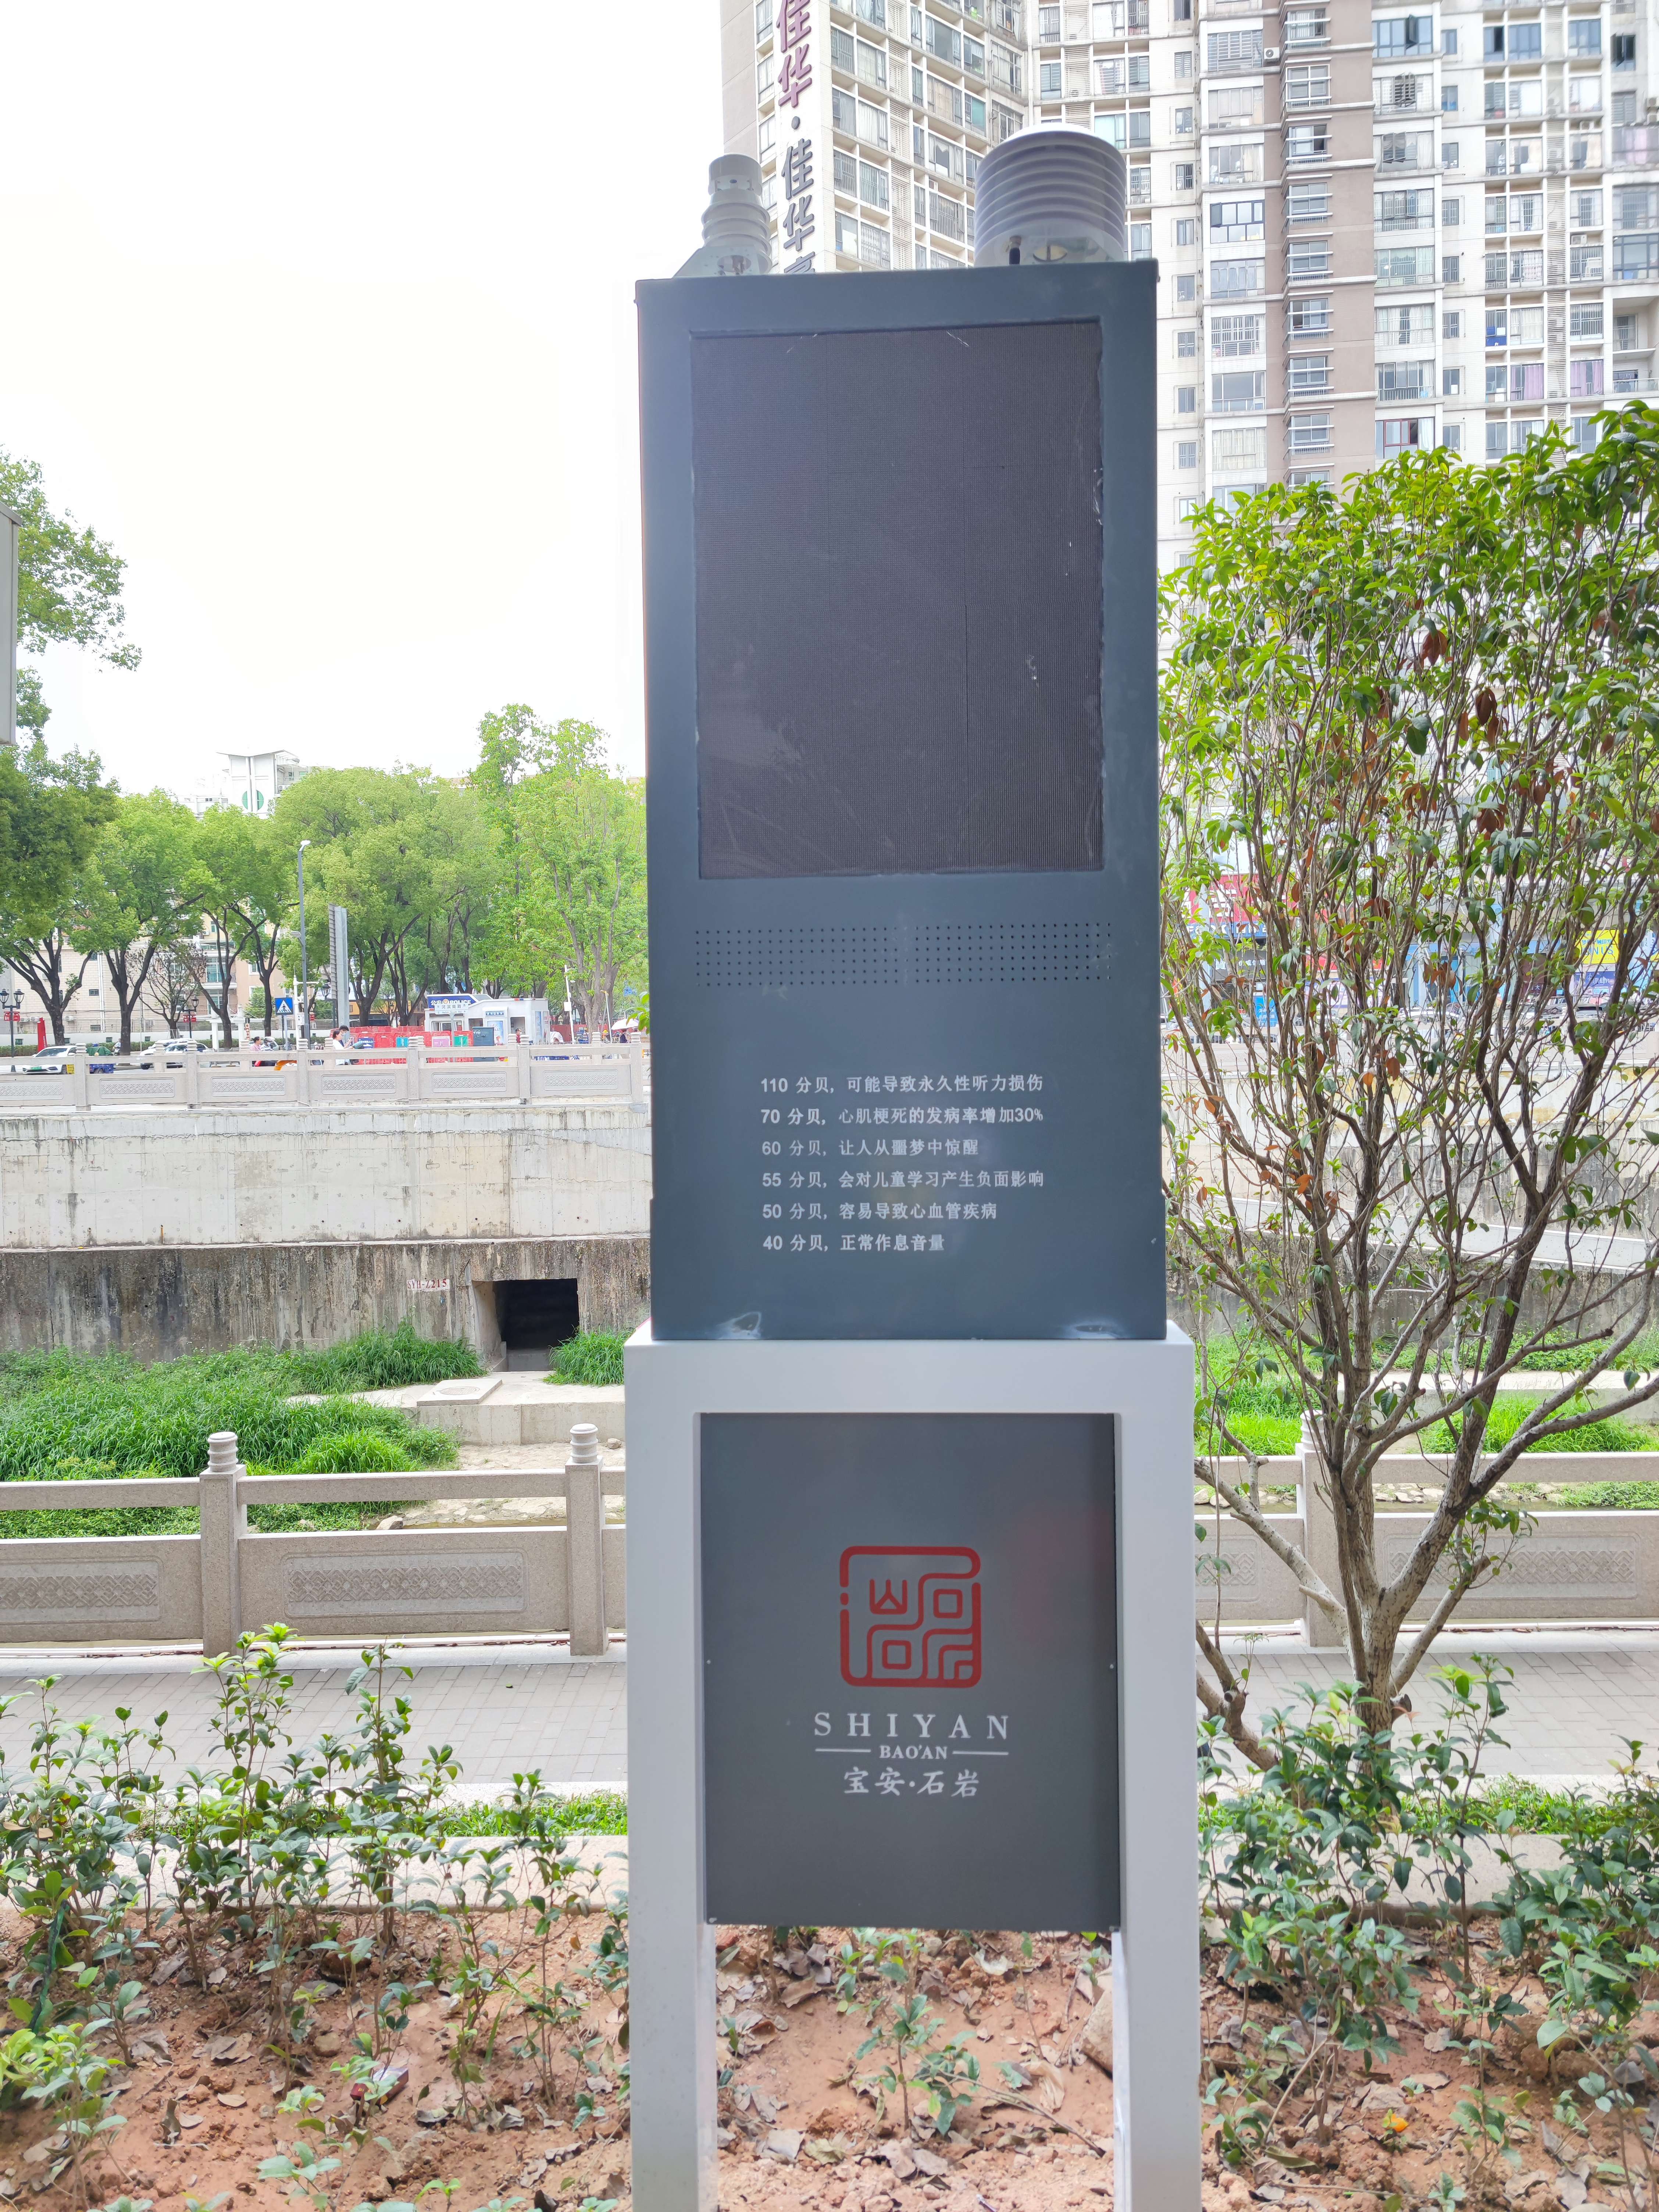 贵州城市街道噪声超标喊话系统云平台管理  城市街道噪声超标喊话系统